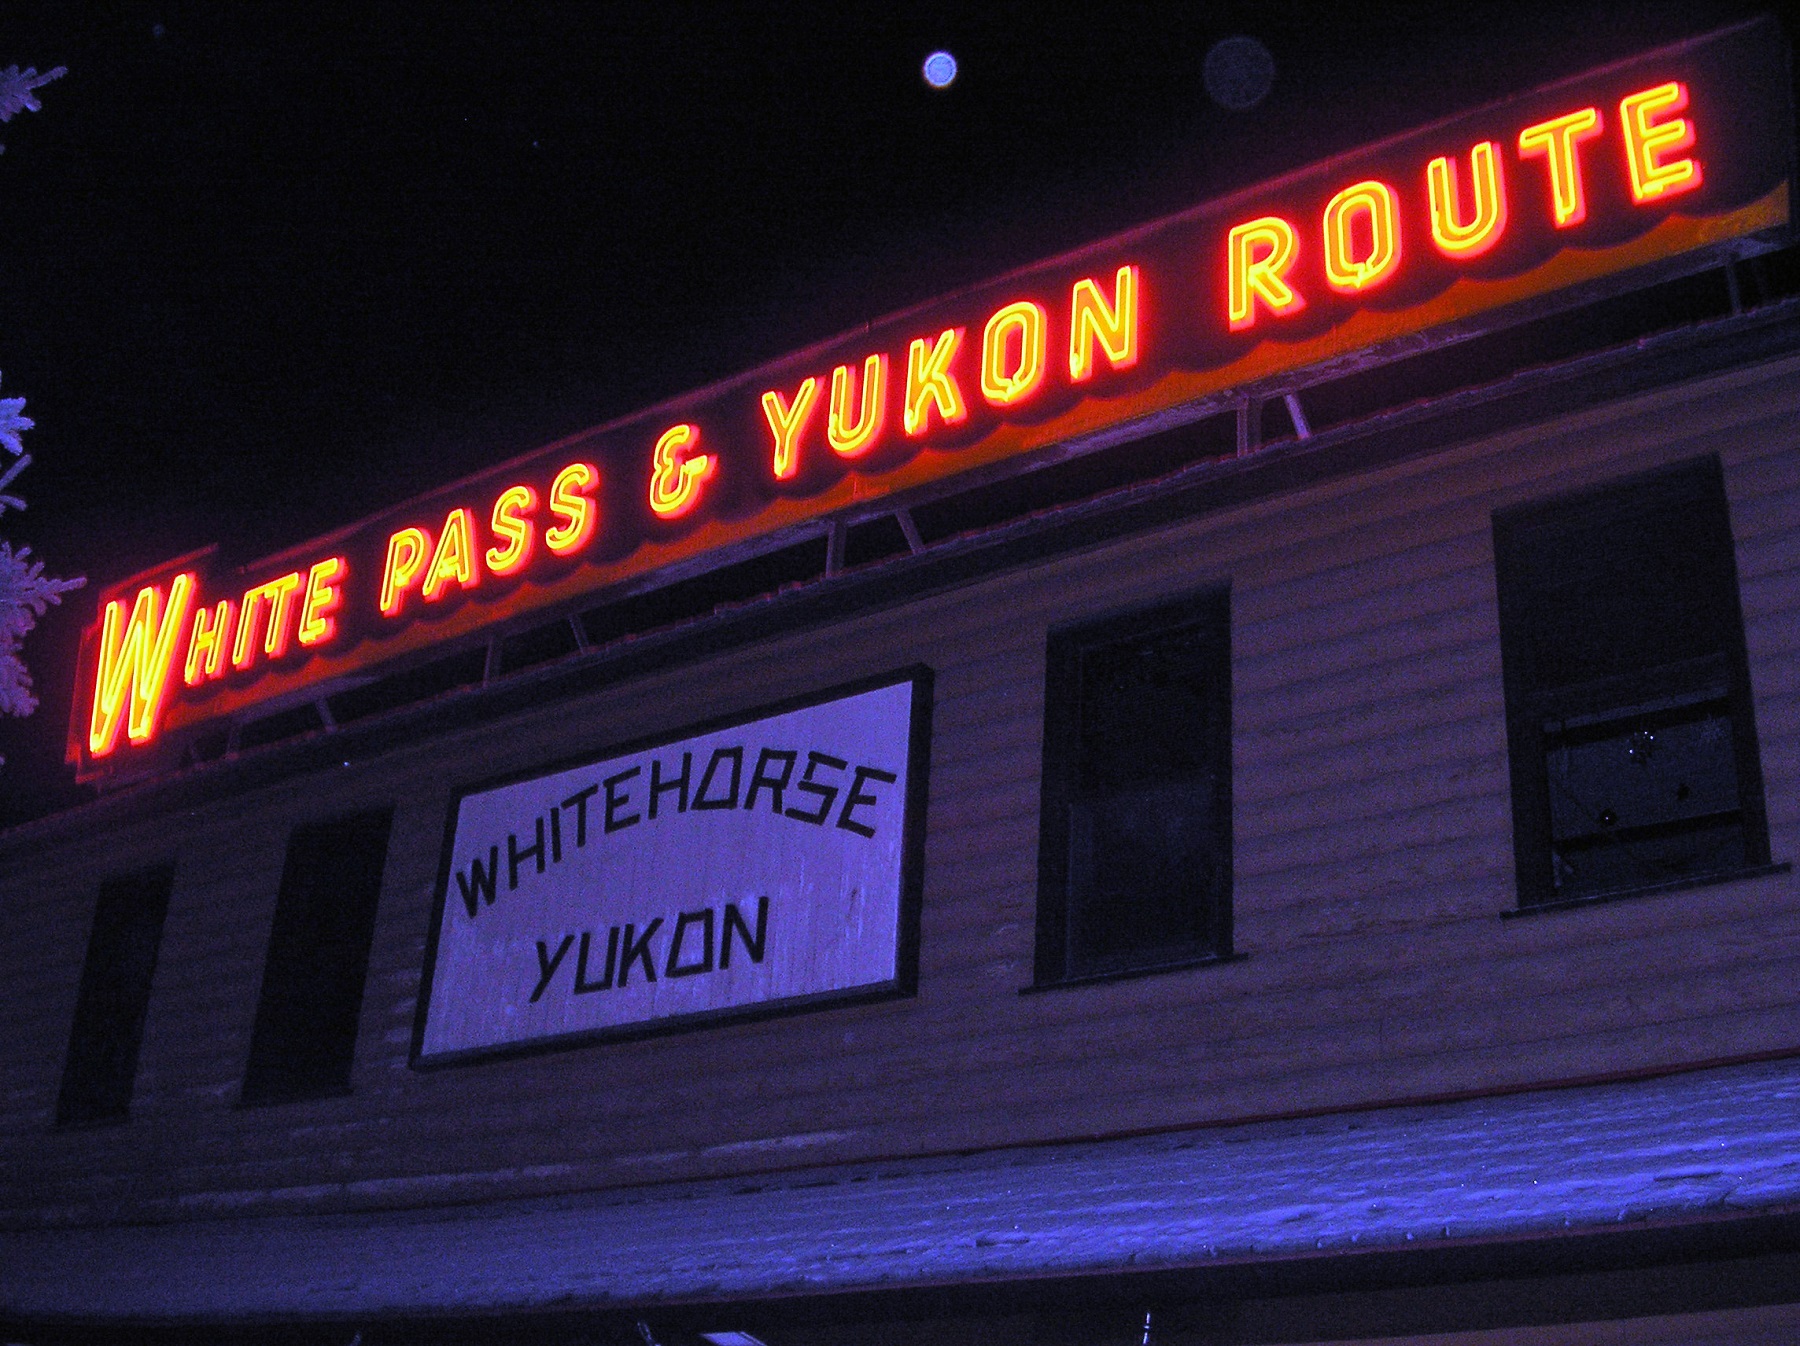 Whitehorse, Yukon